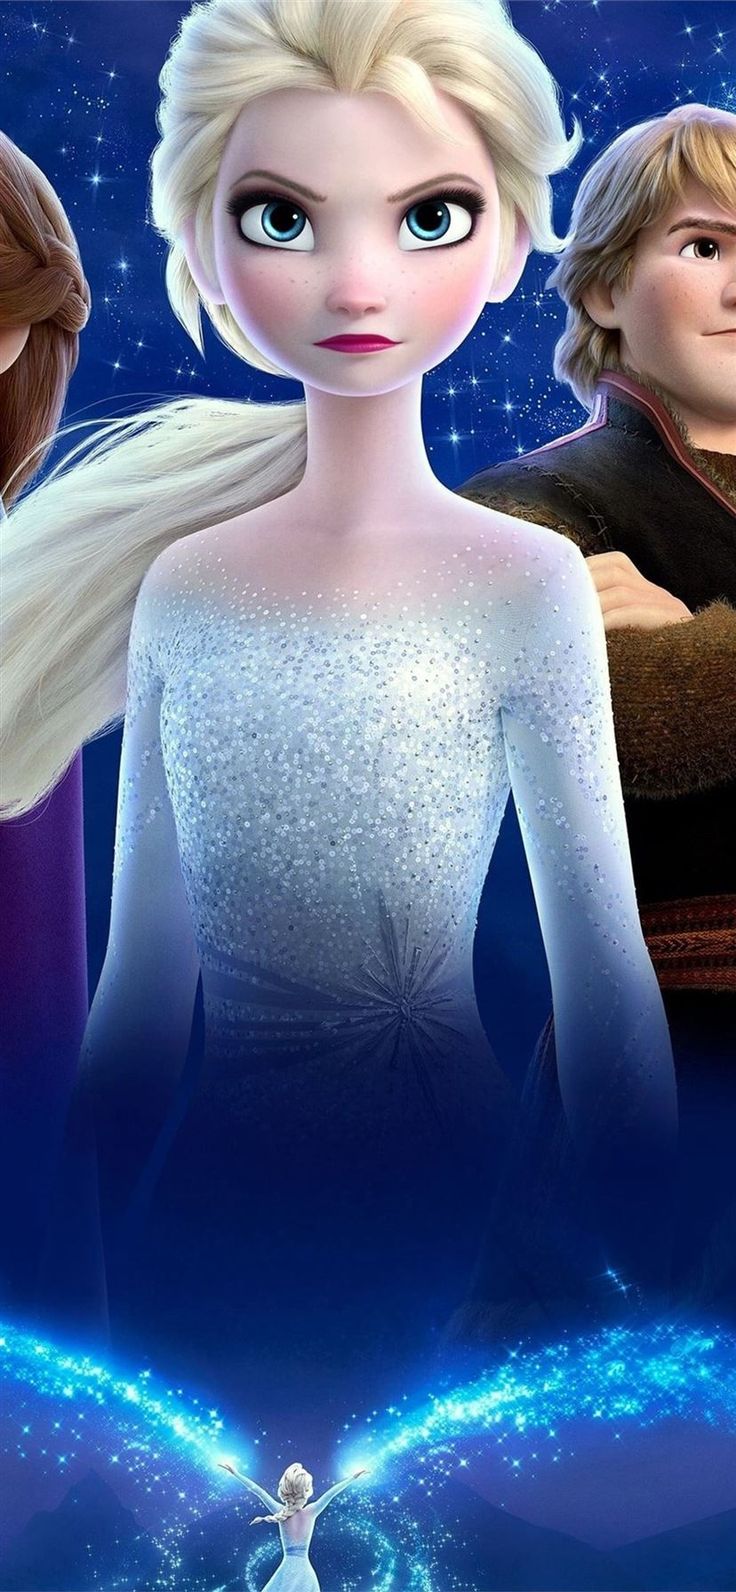 frozen 2 movie 4k #Frozen2 #movies #Disney #poster k #iPhone11Wallpaper. Black HD wallpaper iphone, Best iphone wallpaper, Flower iphone wallpaper